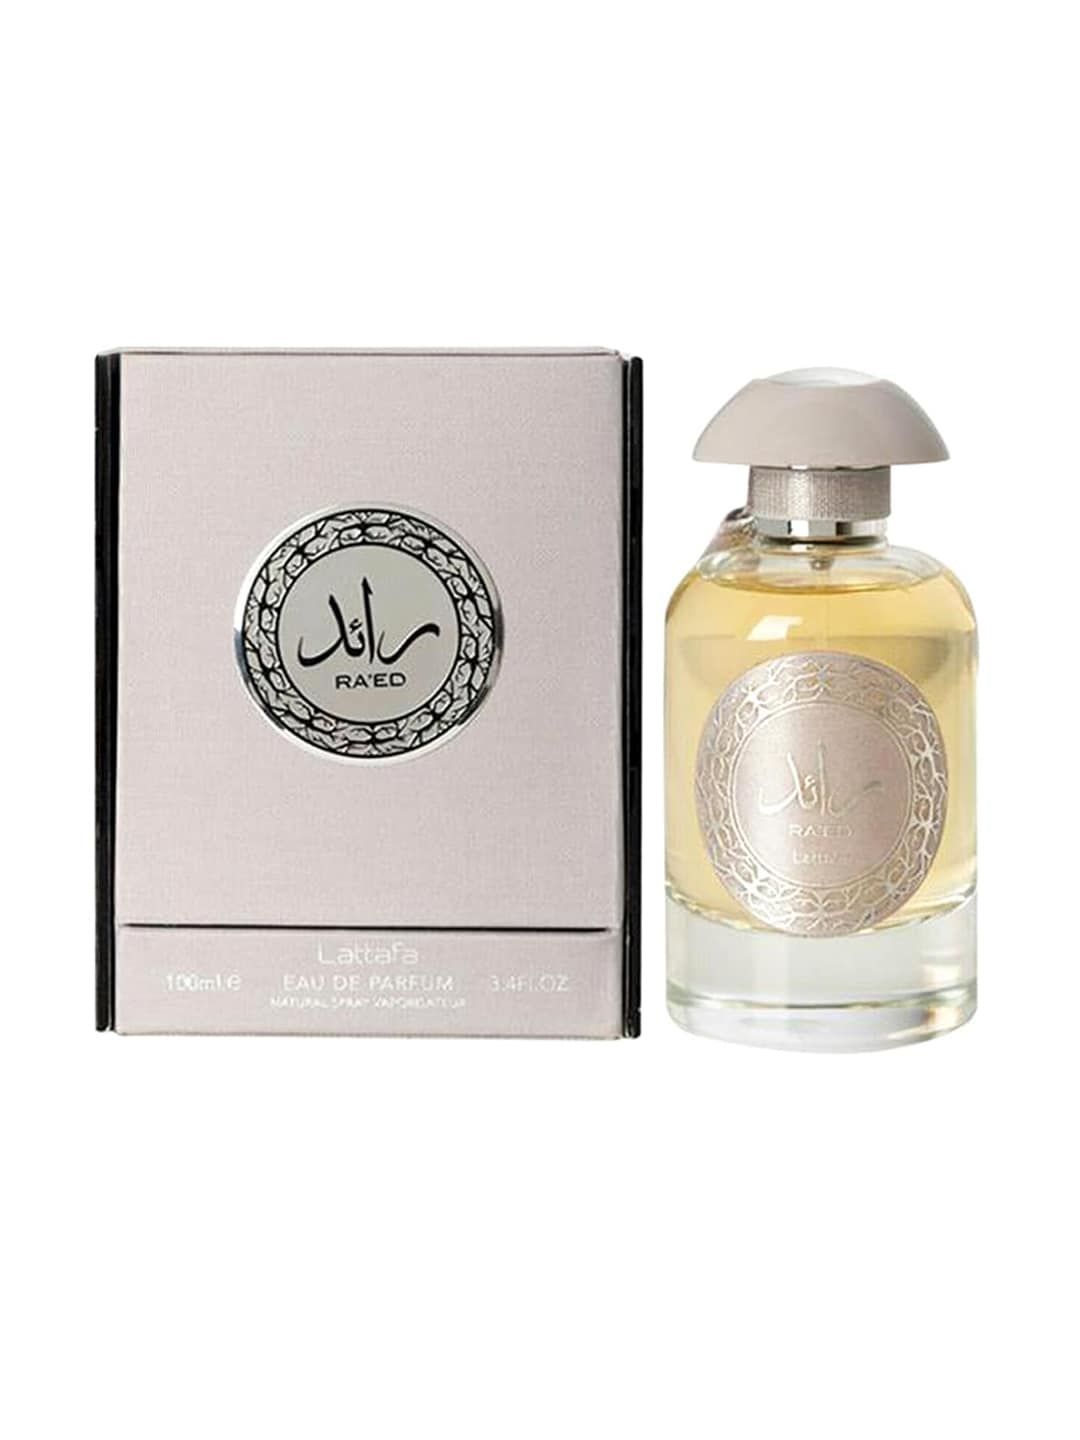 Lattafa Raeed Silver Long Lasting Imported Eau De Perfume - 100 ml Price in India